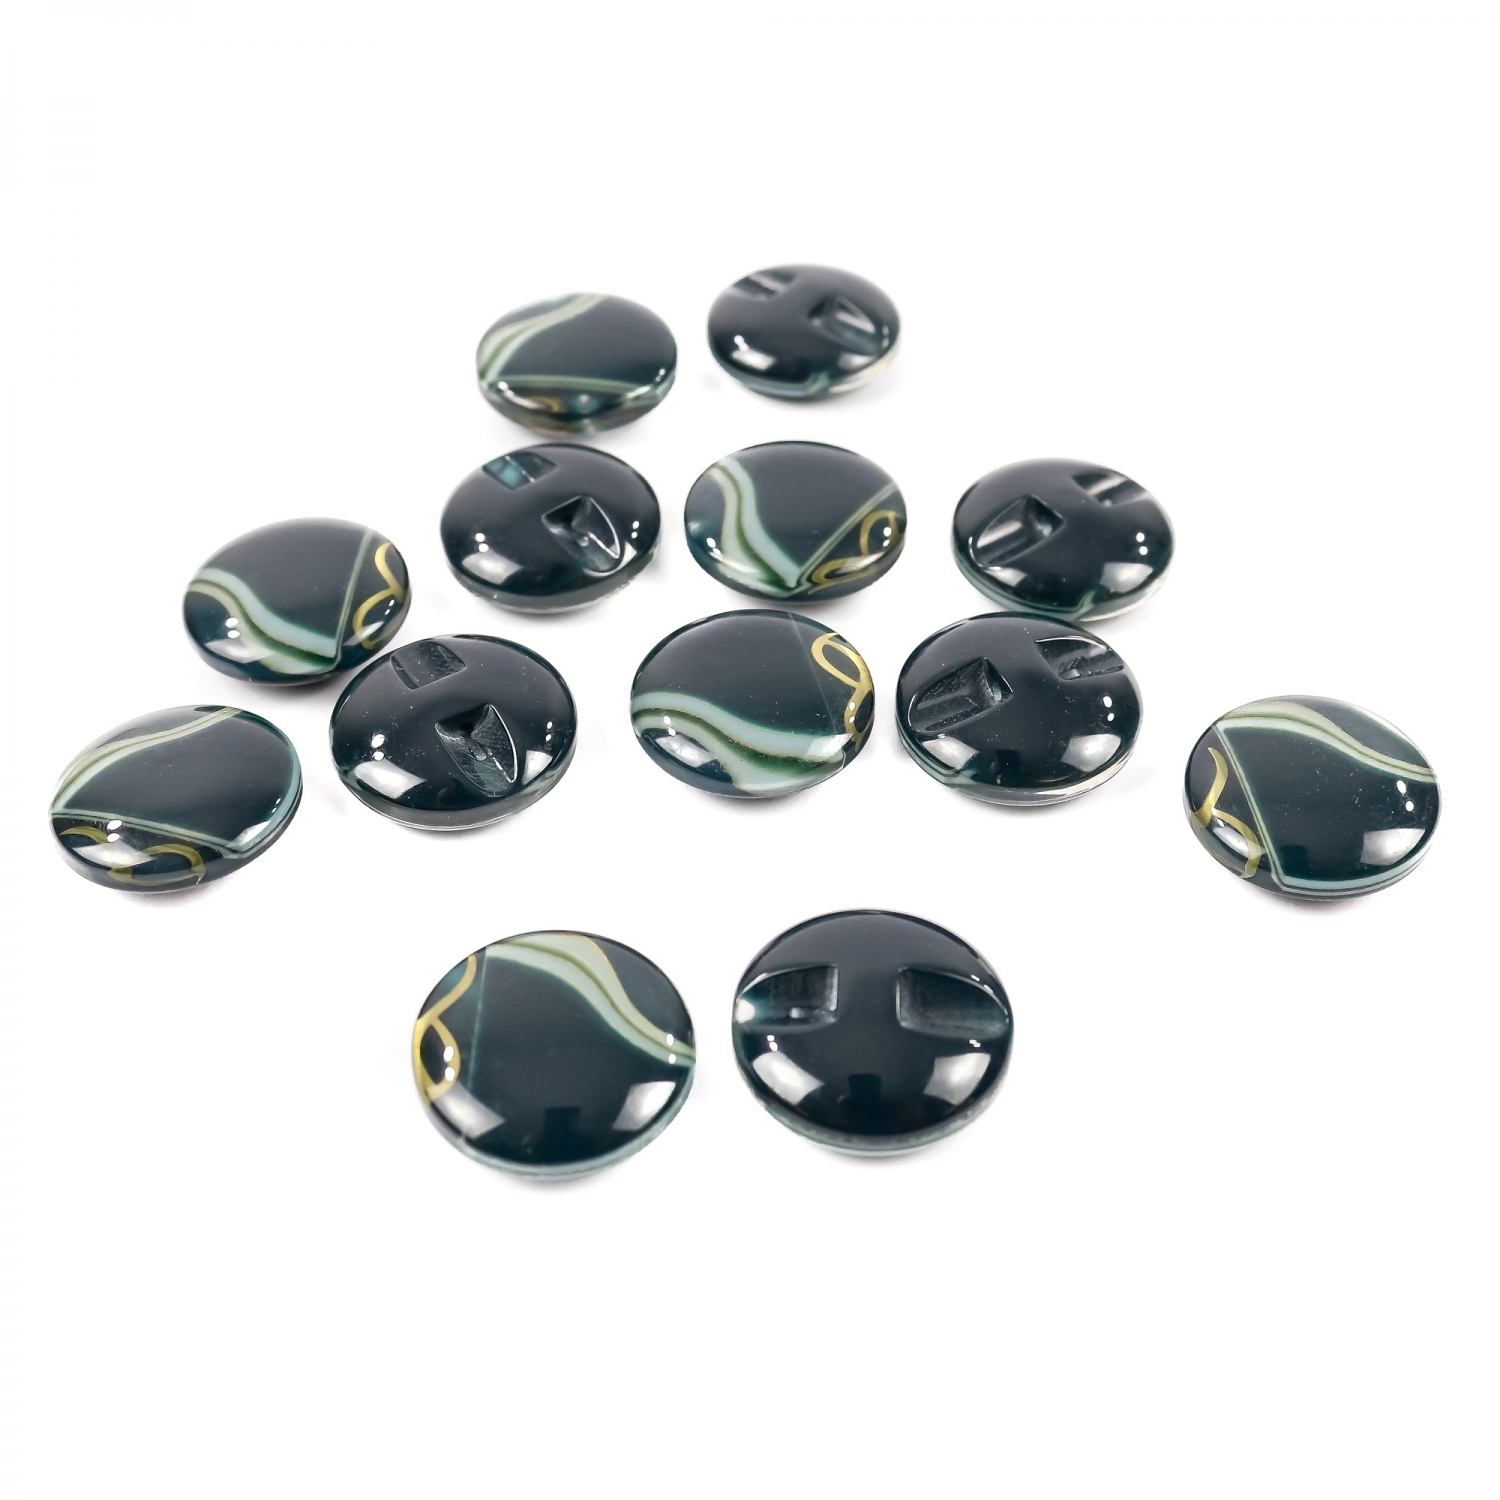 Plastic Shank Buttons, Size: 48L (25 pcs/pack)Code: 0311-1250/48